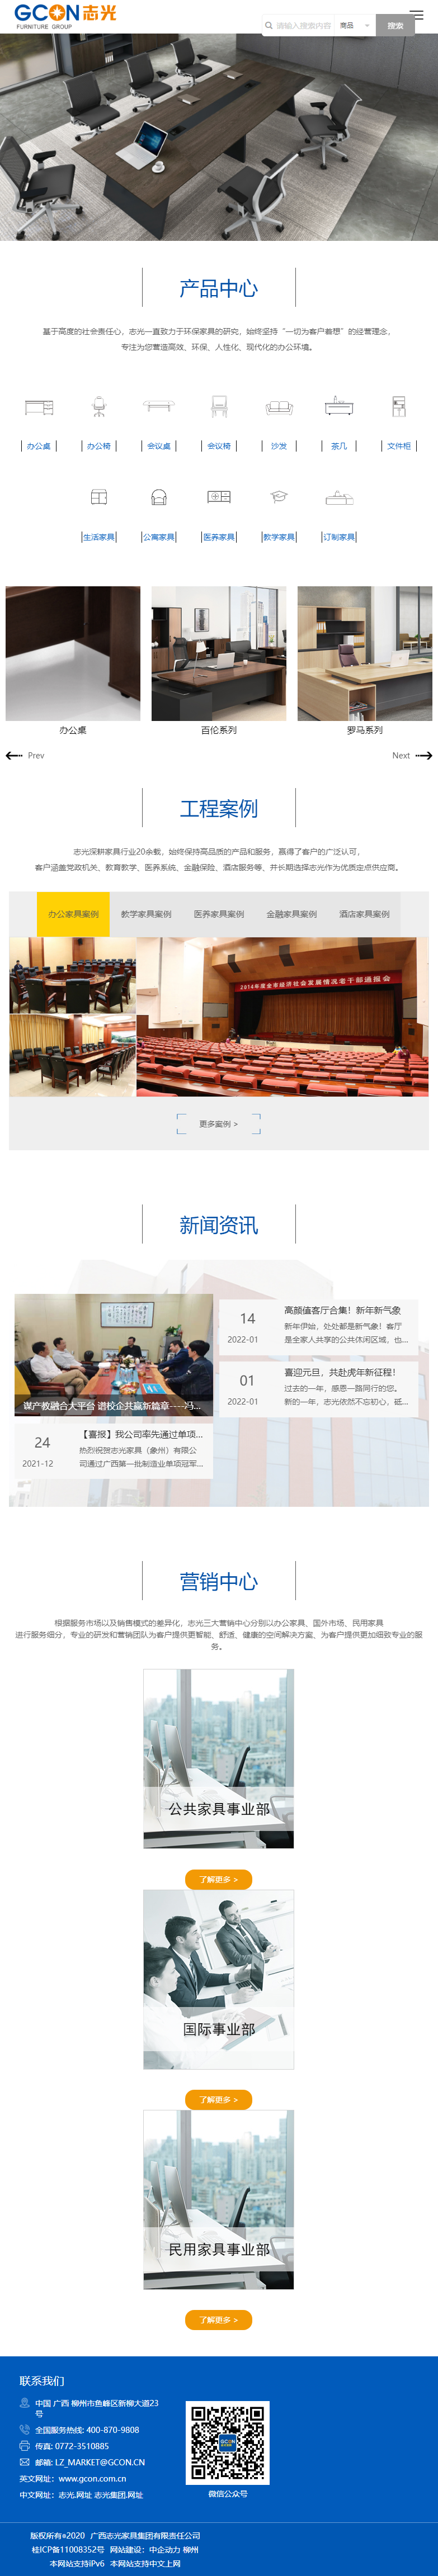 广西志光家具集团有限责任公司网站案例